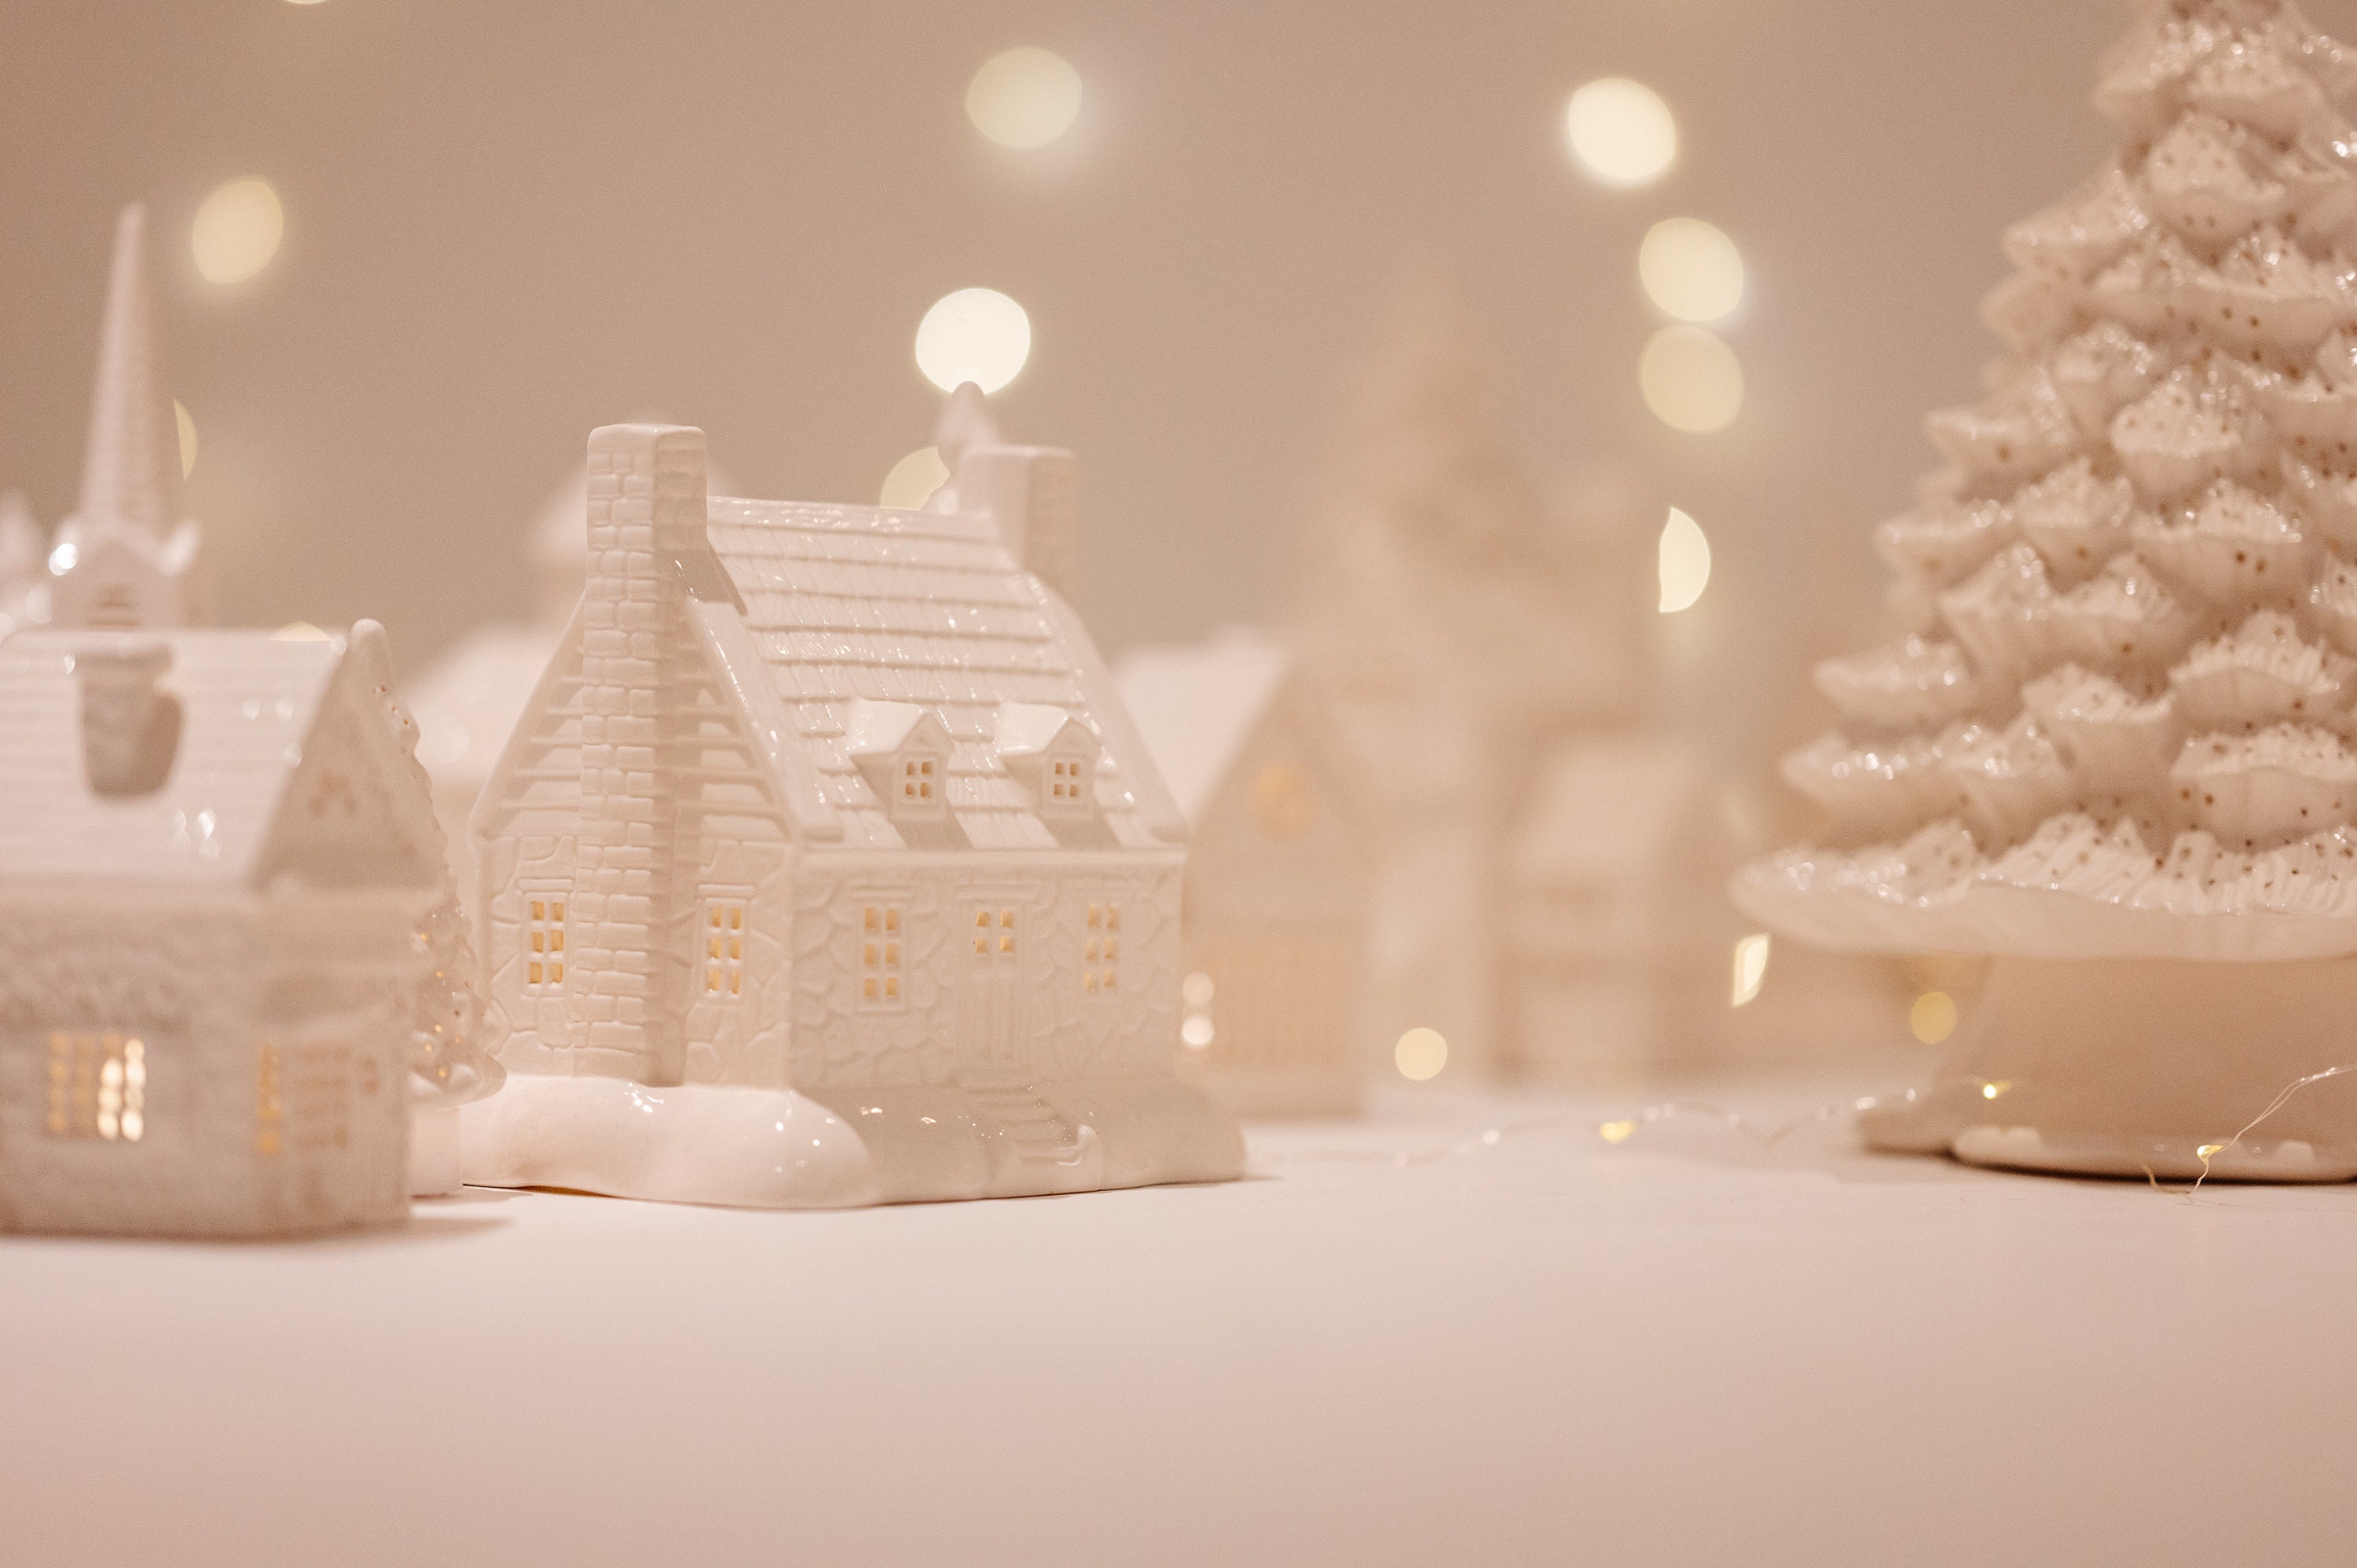 Maison éclairée pour village de Noël miniature Winterkinder, restaurant